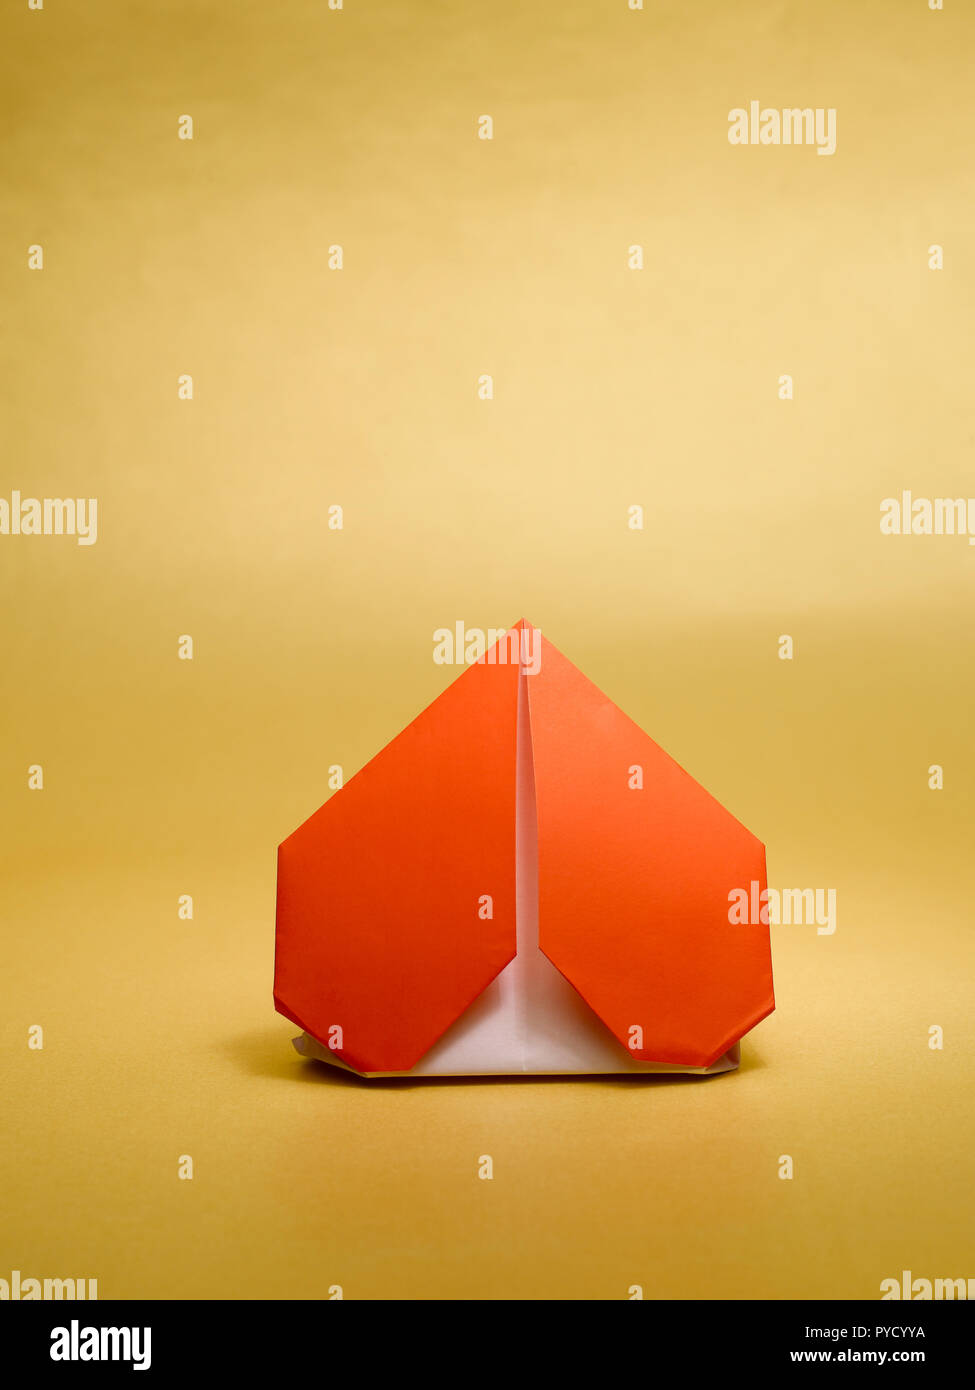 Cuori di carta di Origami fotografia stock. Immagine di origami